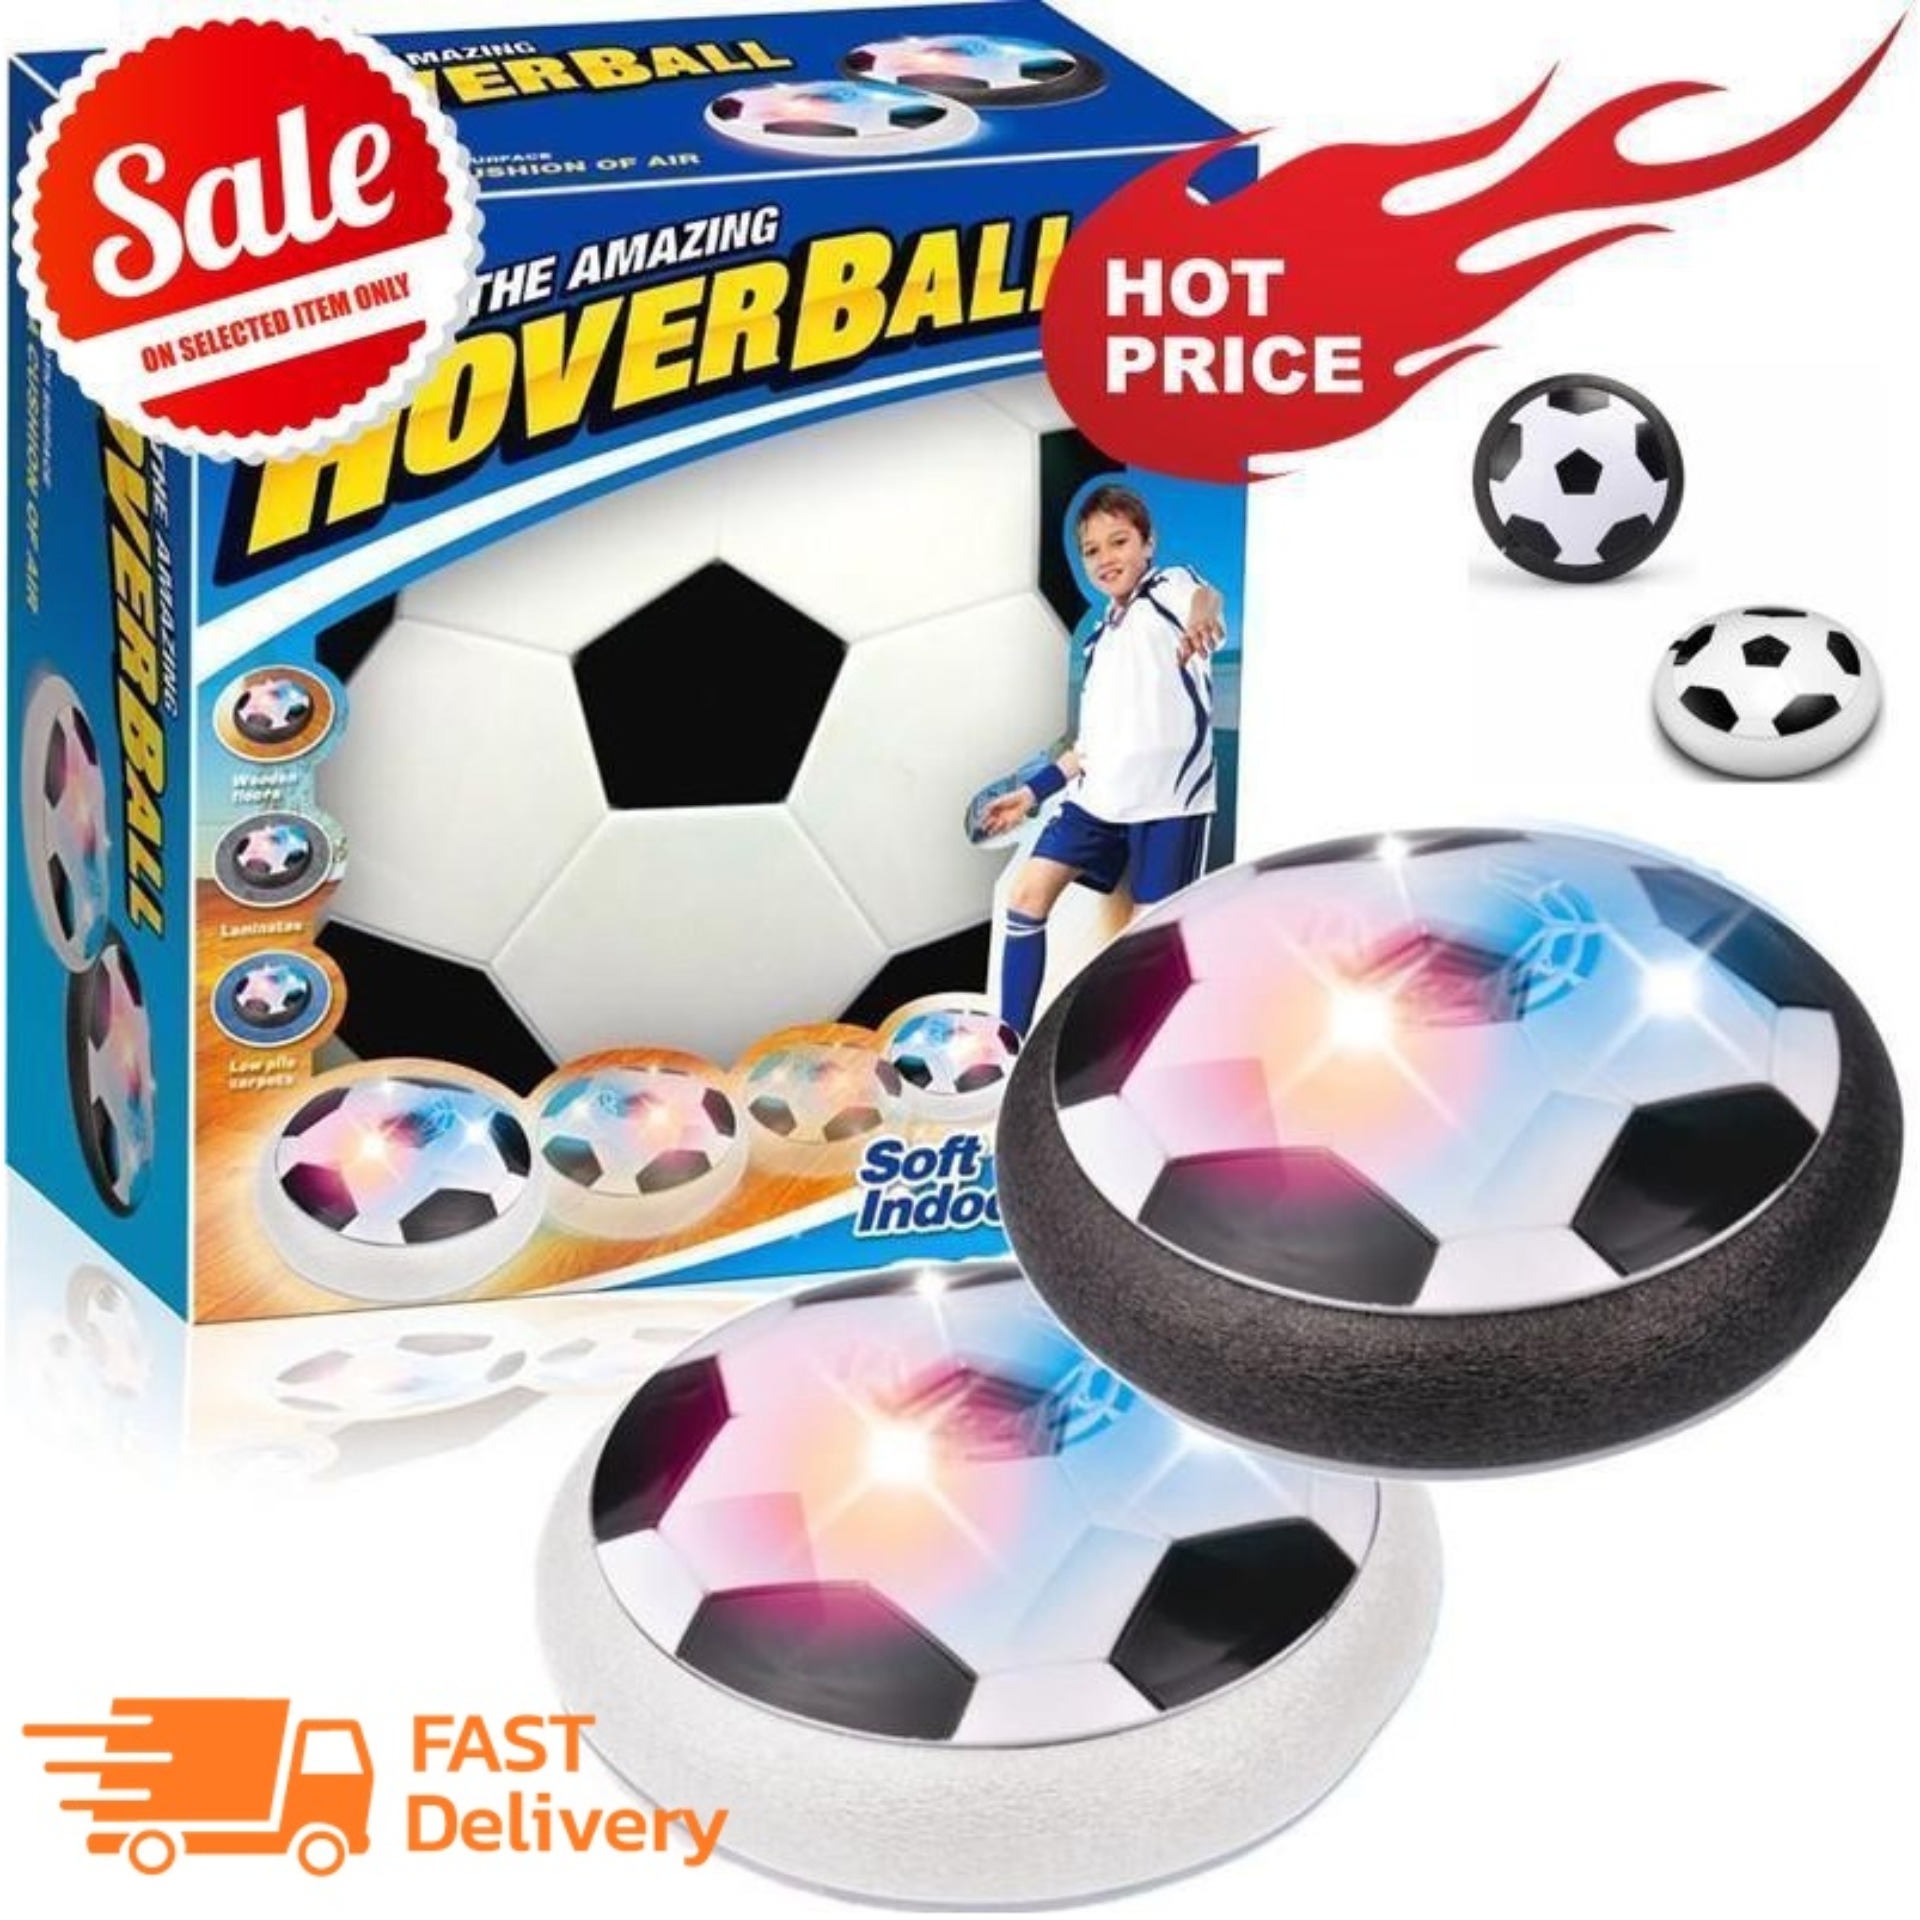 ลูกฟุตบอล ของเล่น Hover Ball A0053ฟุตบอลของเล่นเพื่อฝึกฝนทักษะการเล่นฟุตบอลสำหรับในร่ม มีไฟ LED